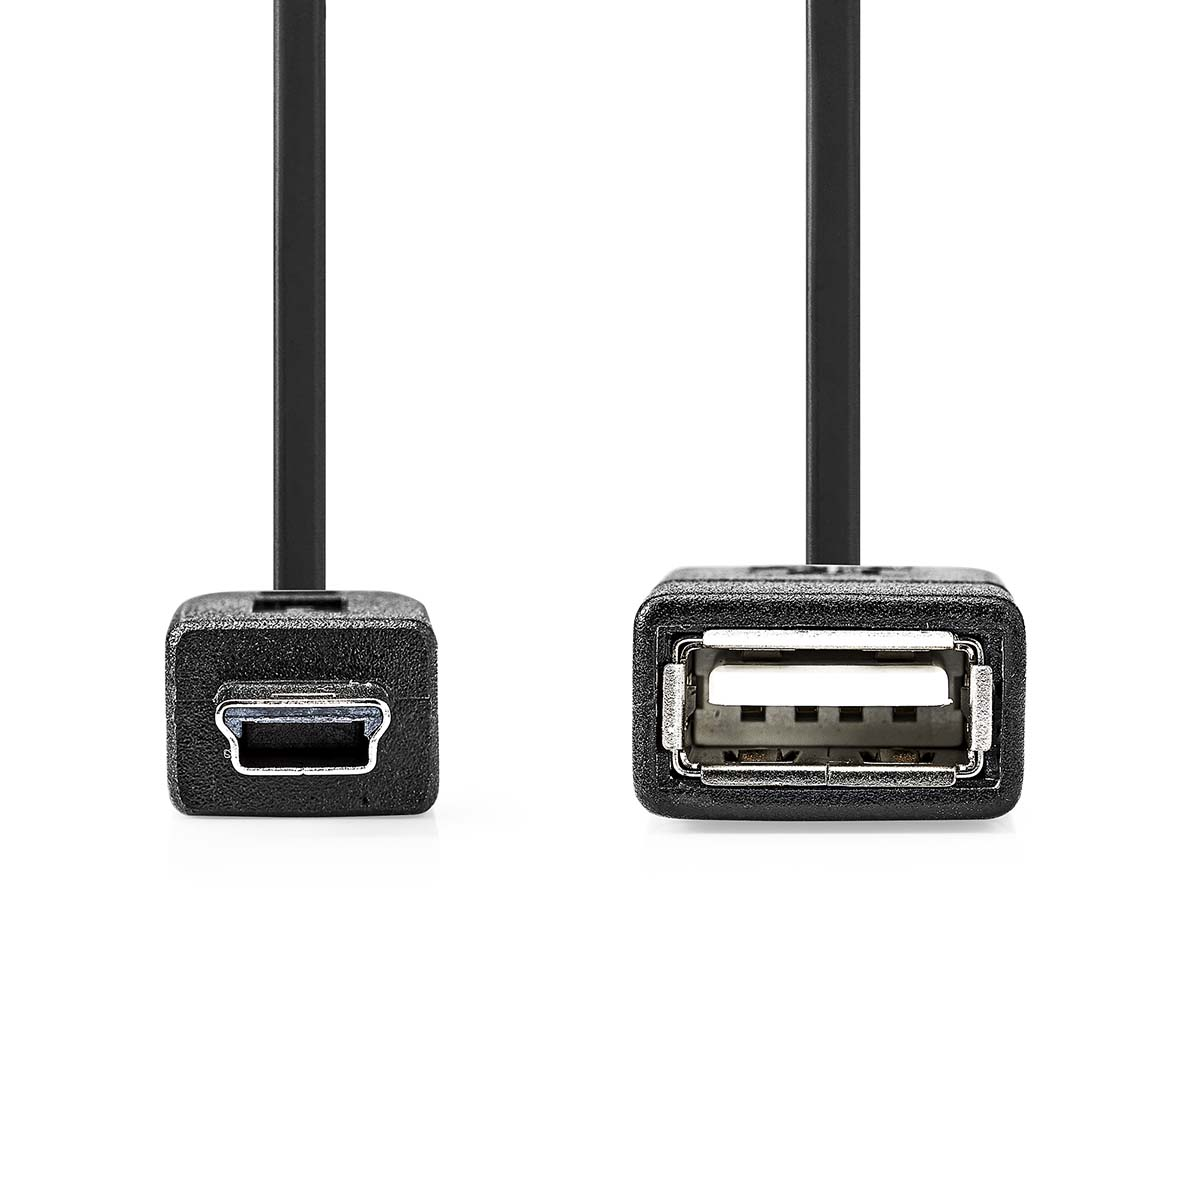 USB Micro-B CCGP60315BK02 Adapter NEDIS